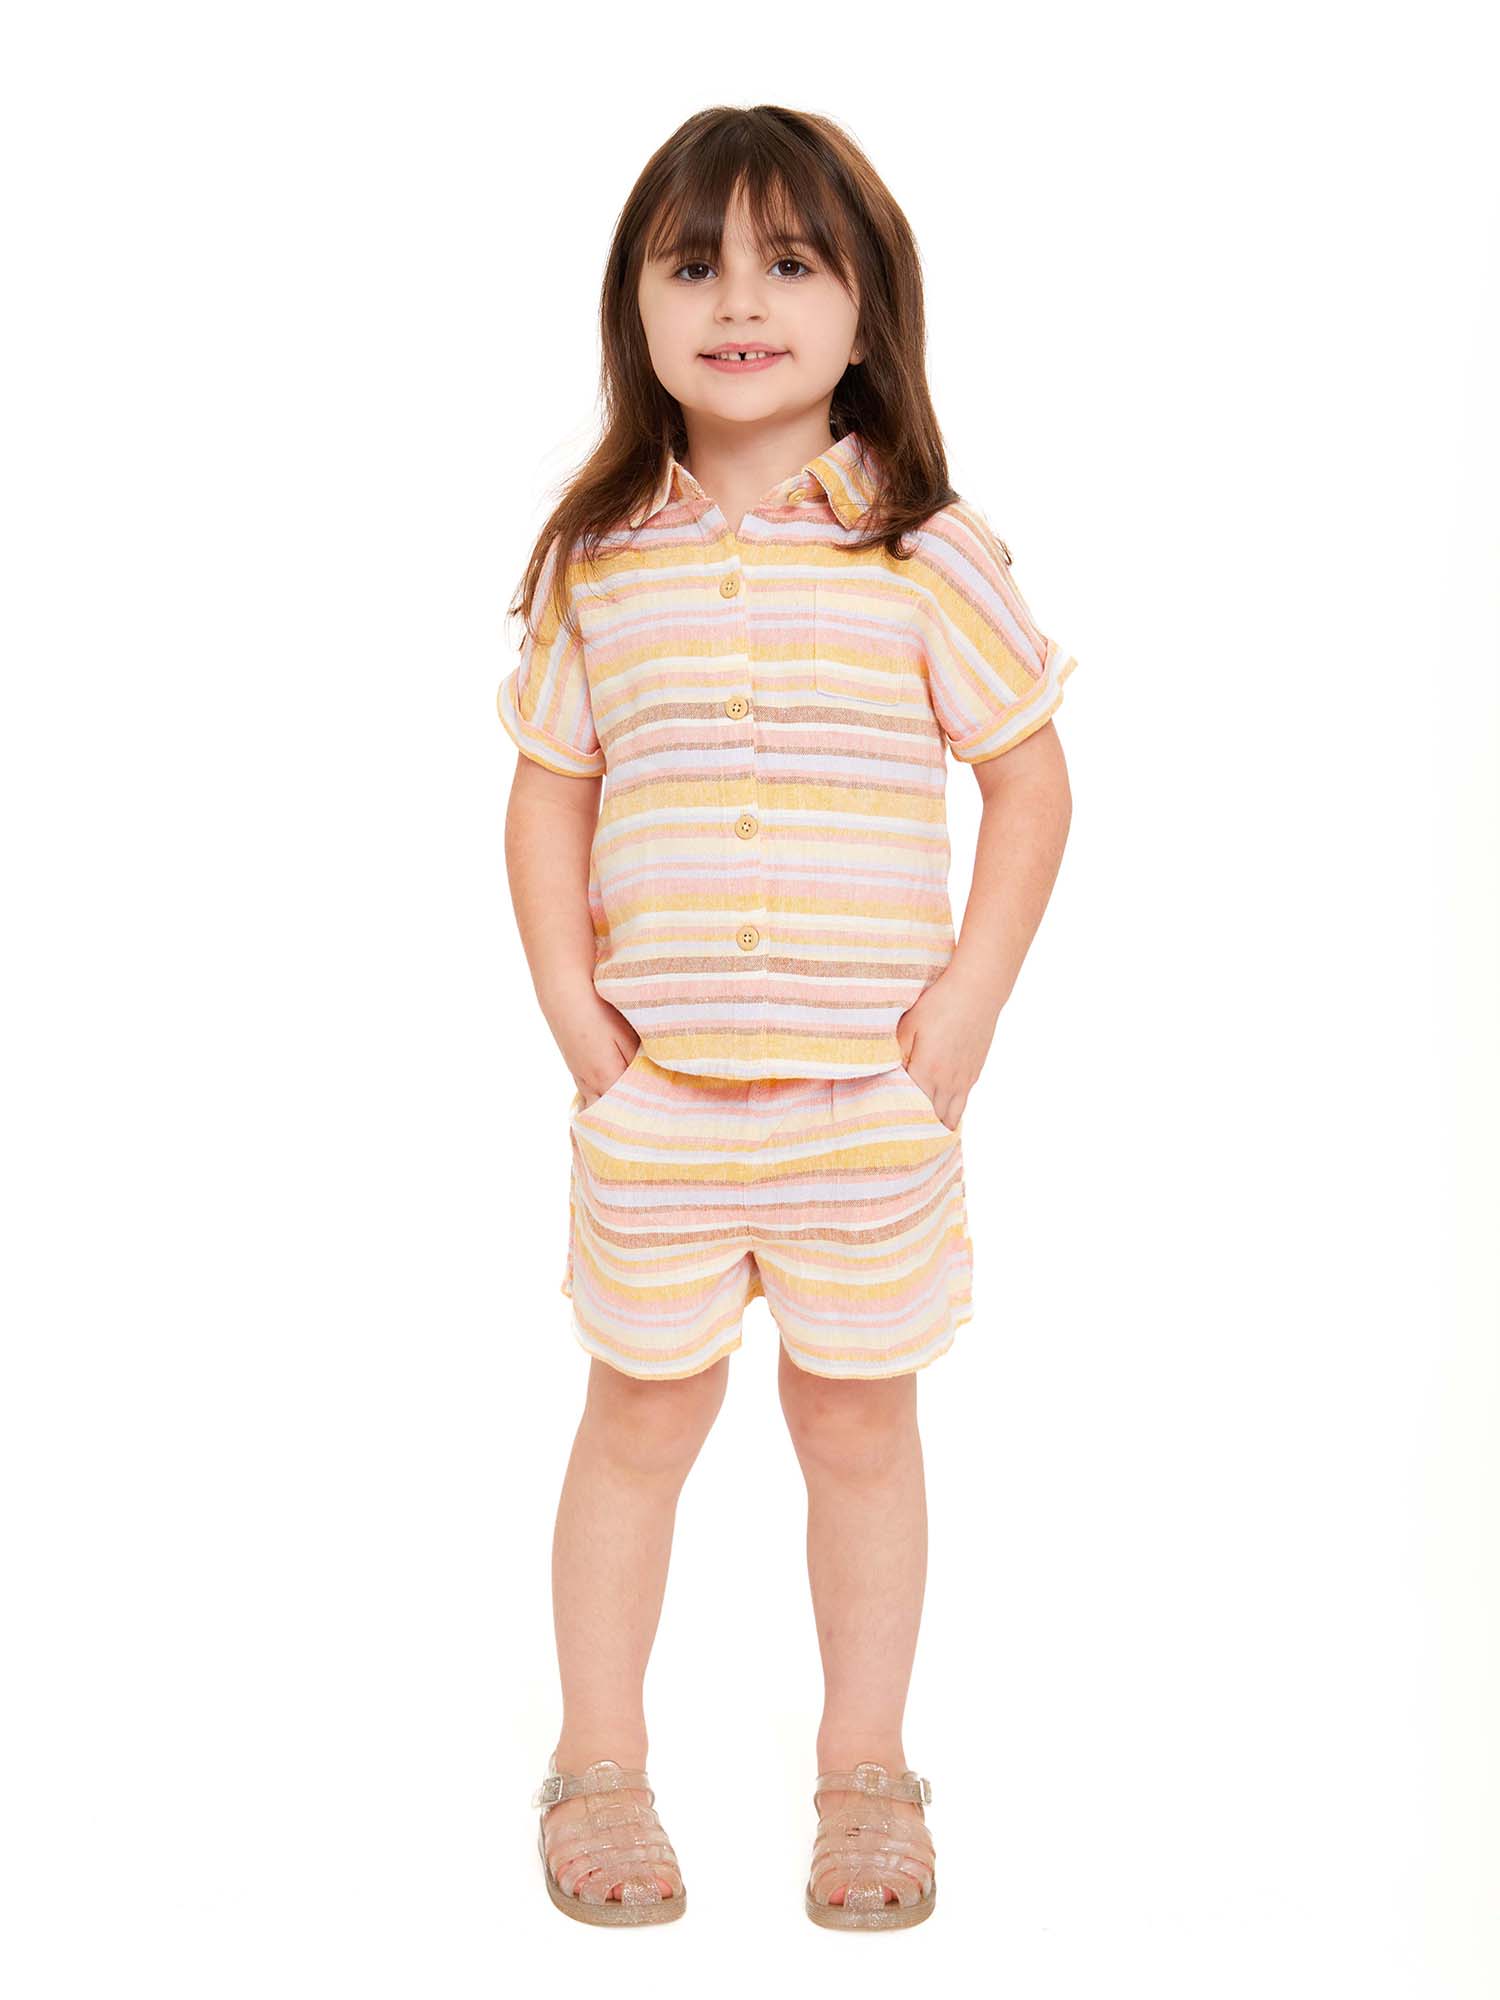 Wonder Nation Toddler Girls Elevated Shirt and Shorts Set, Sizes 12M-5T - image 6 of 9